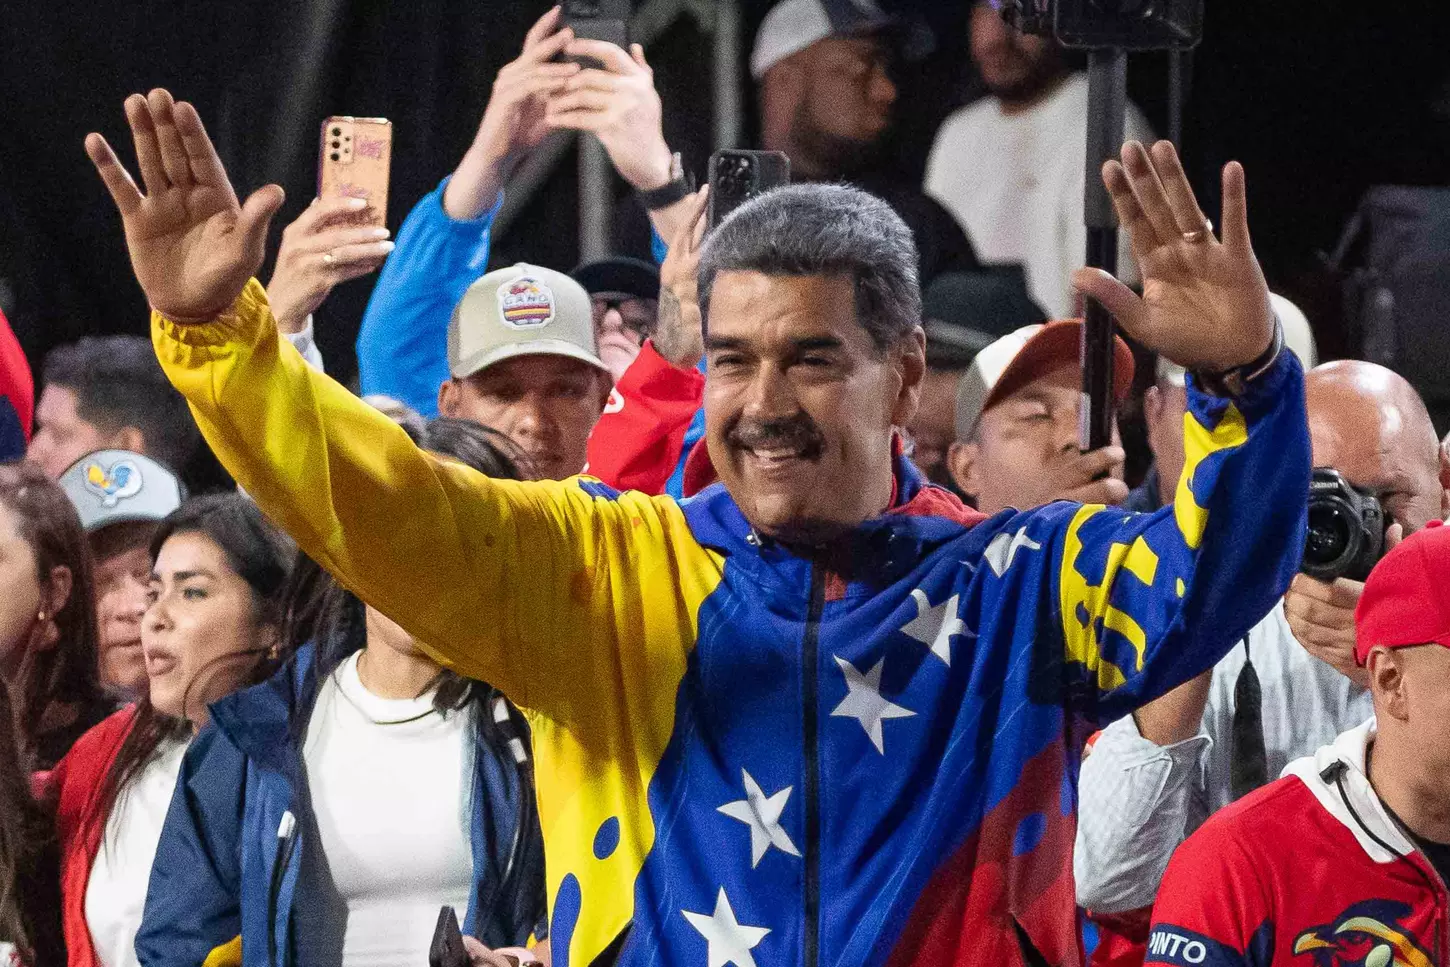 El presidente de Venezuela, Nicolás Maduro, celebra los resultados de las elecciones presidenciales. — Ronald Peña R. / EFE